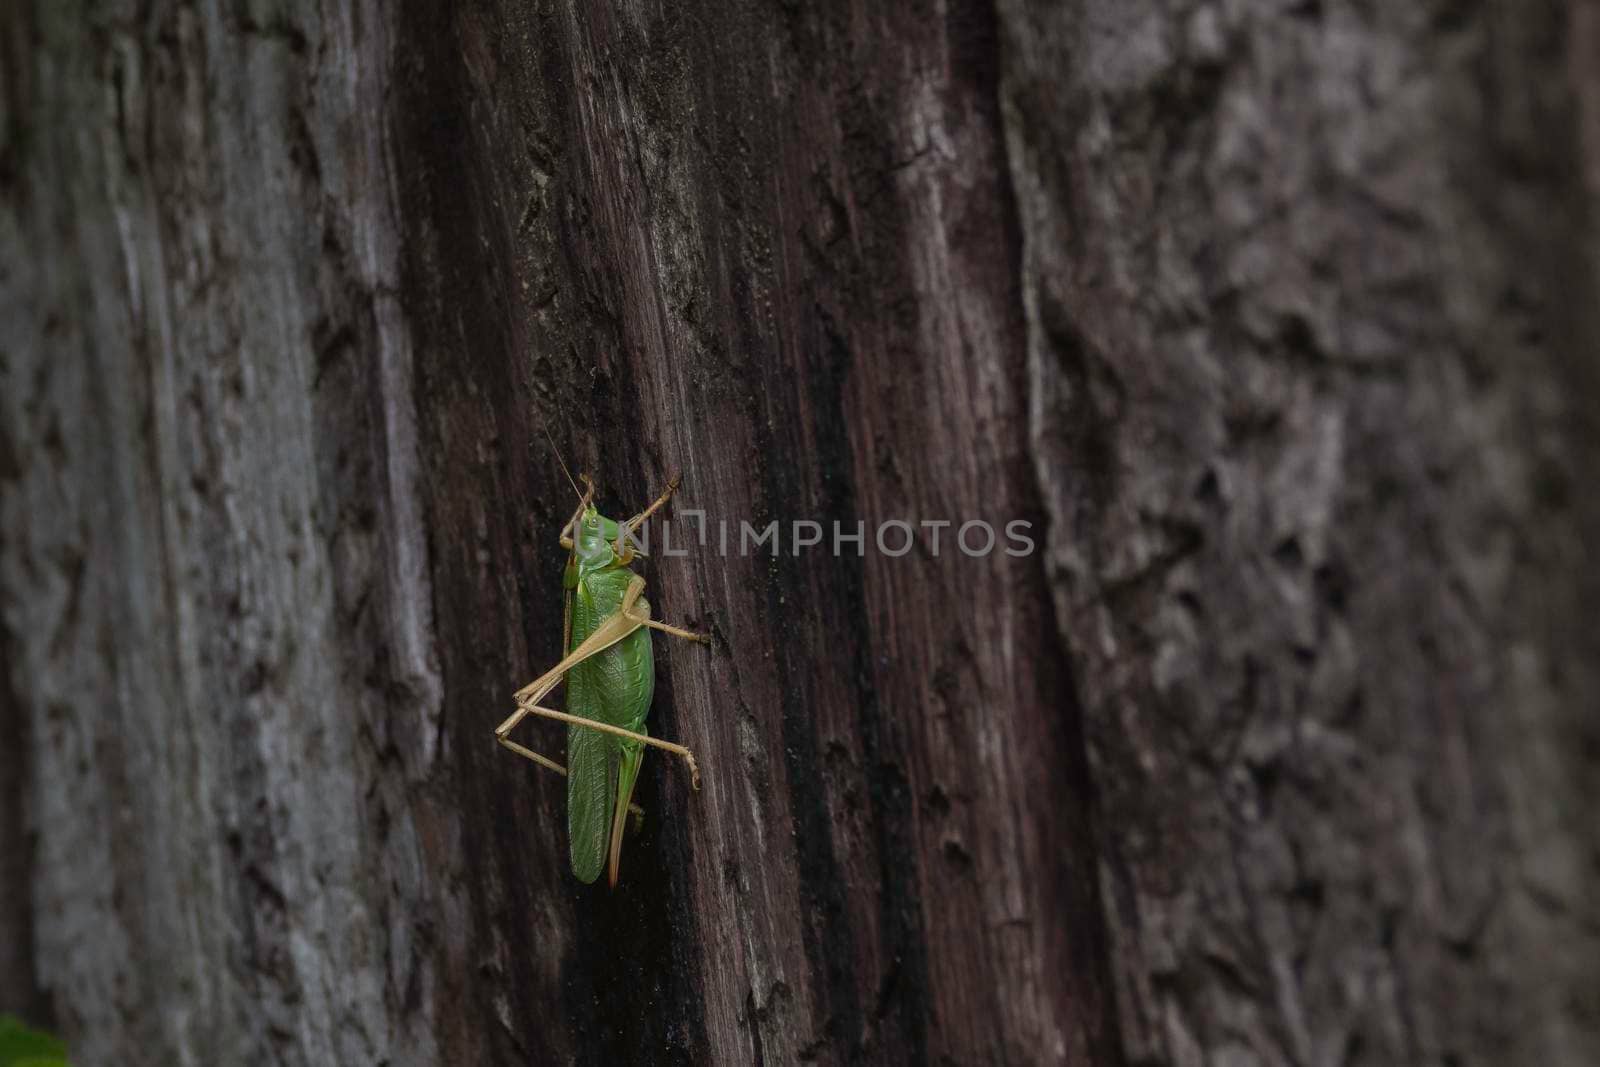 Green cricket or ,tettigoniidae walking on a tree